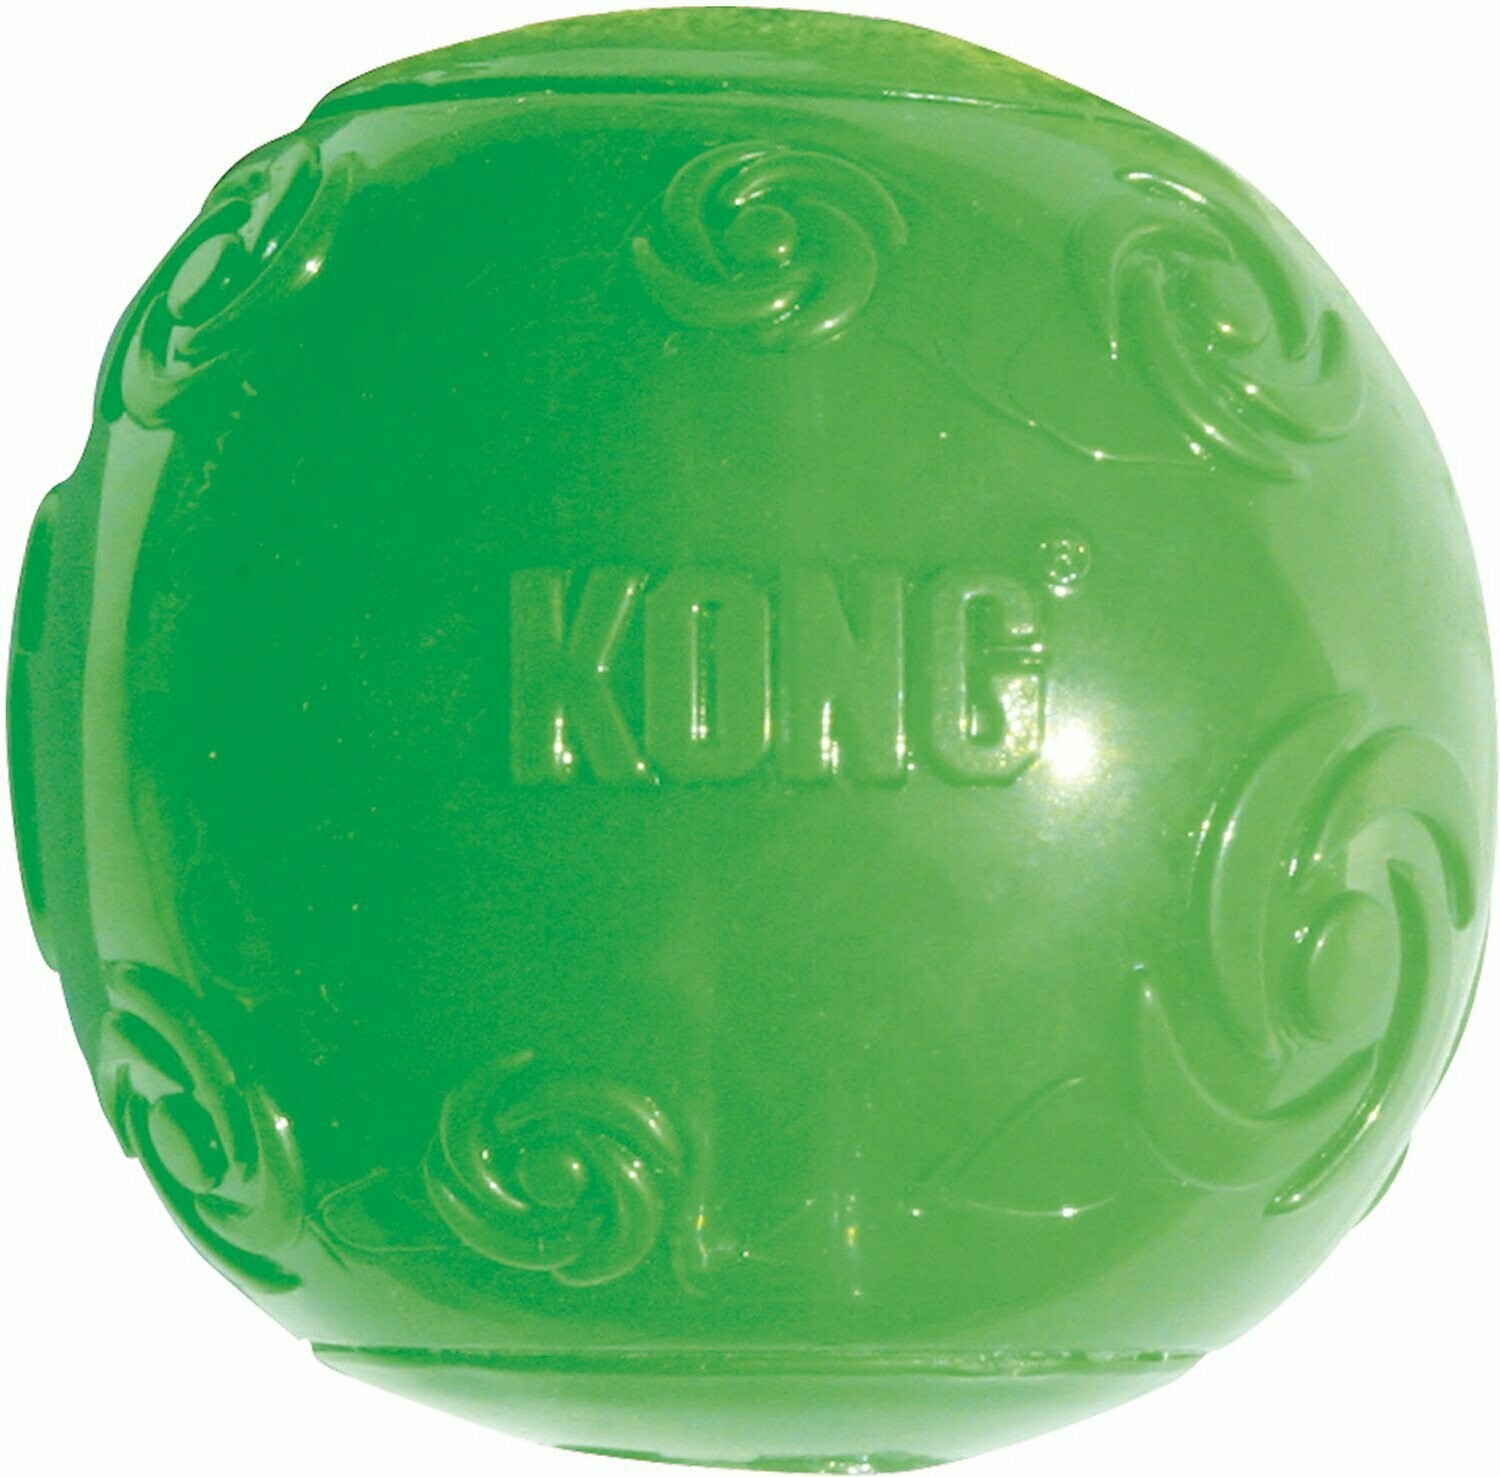 Kong Squeezz-Ball- Medium